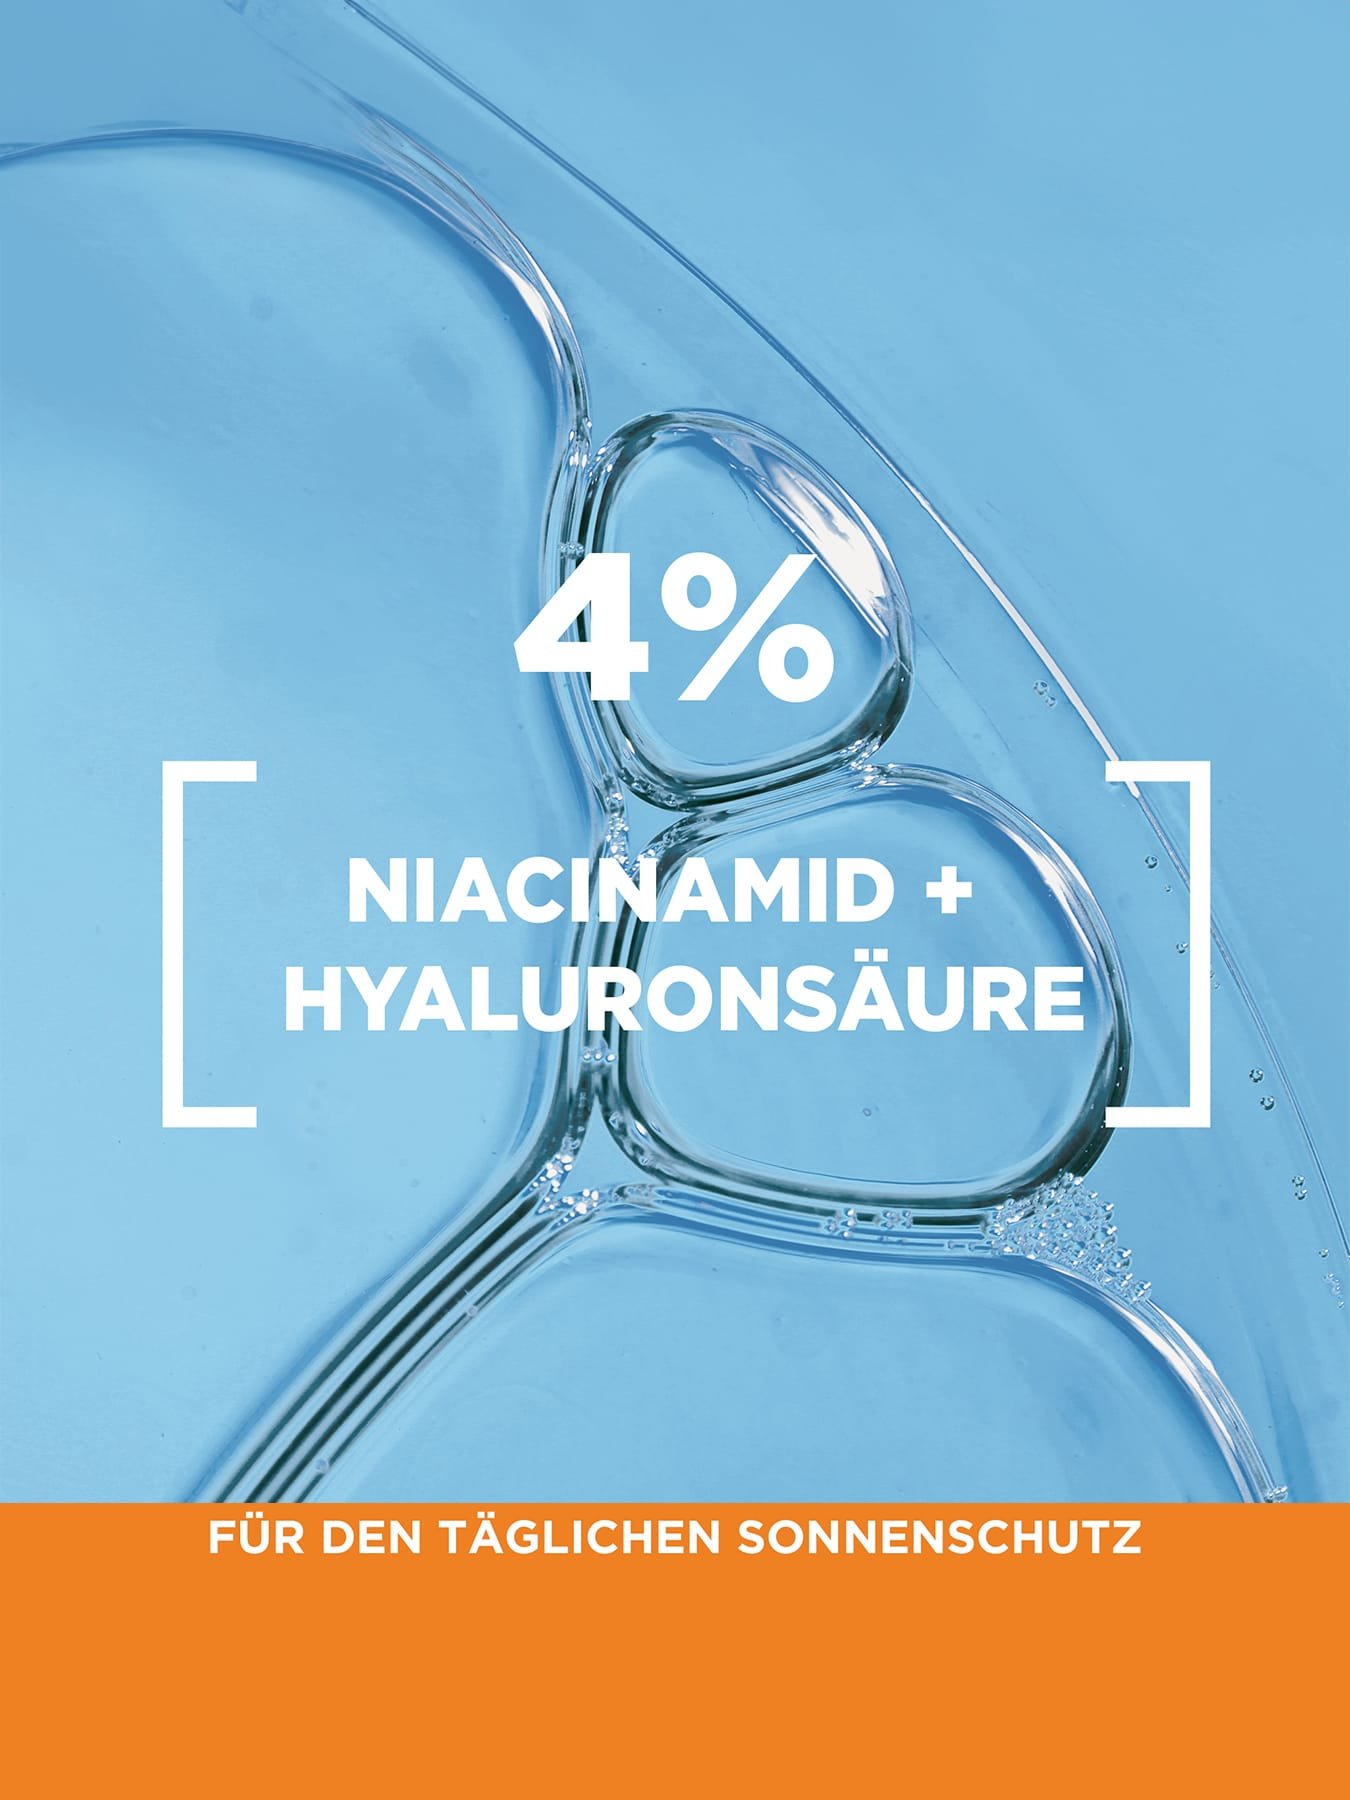 Detailaufnahme einer durchsichtigen Flüssigkeit auf blauem Hintergrund mit Produktvorteil 4% Niacinamid + Hyaluronsäure